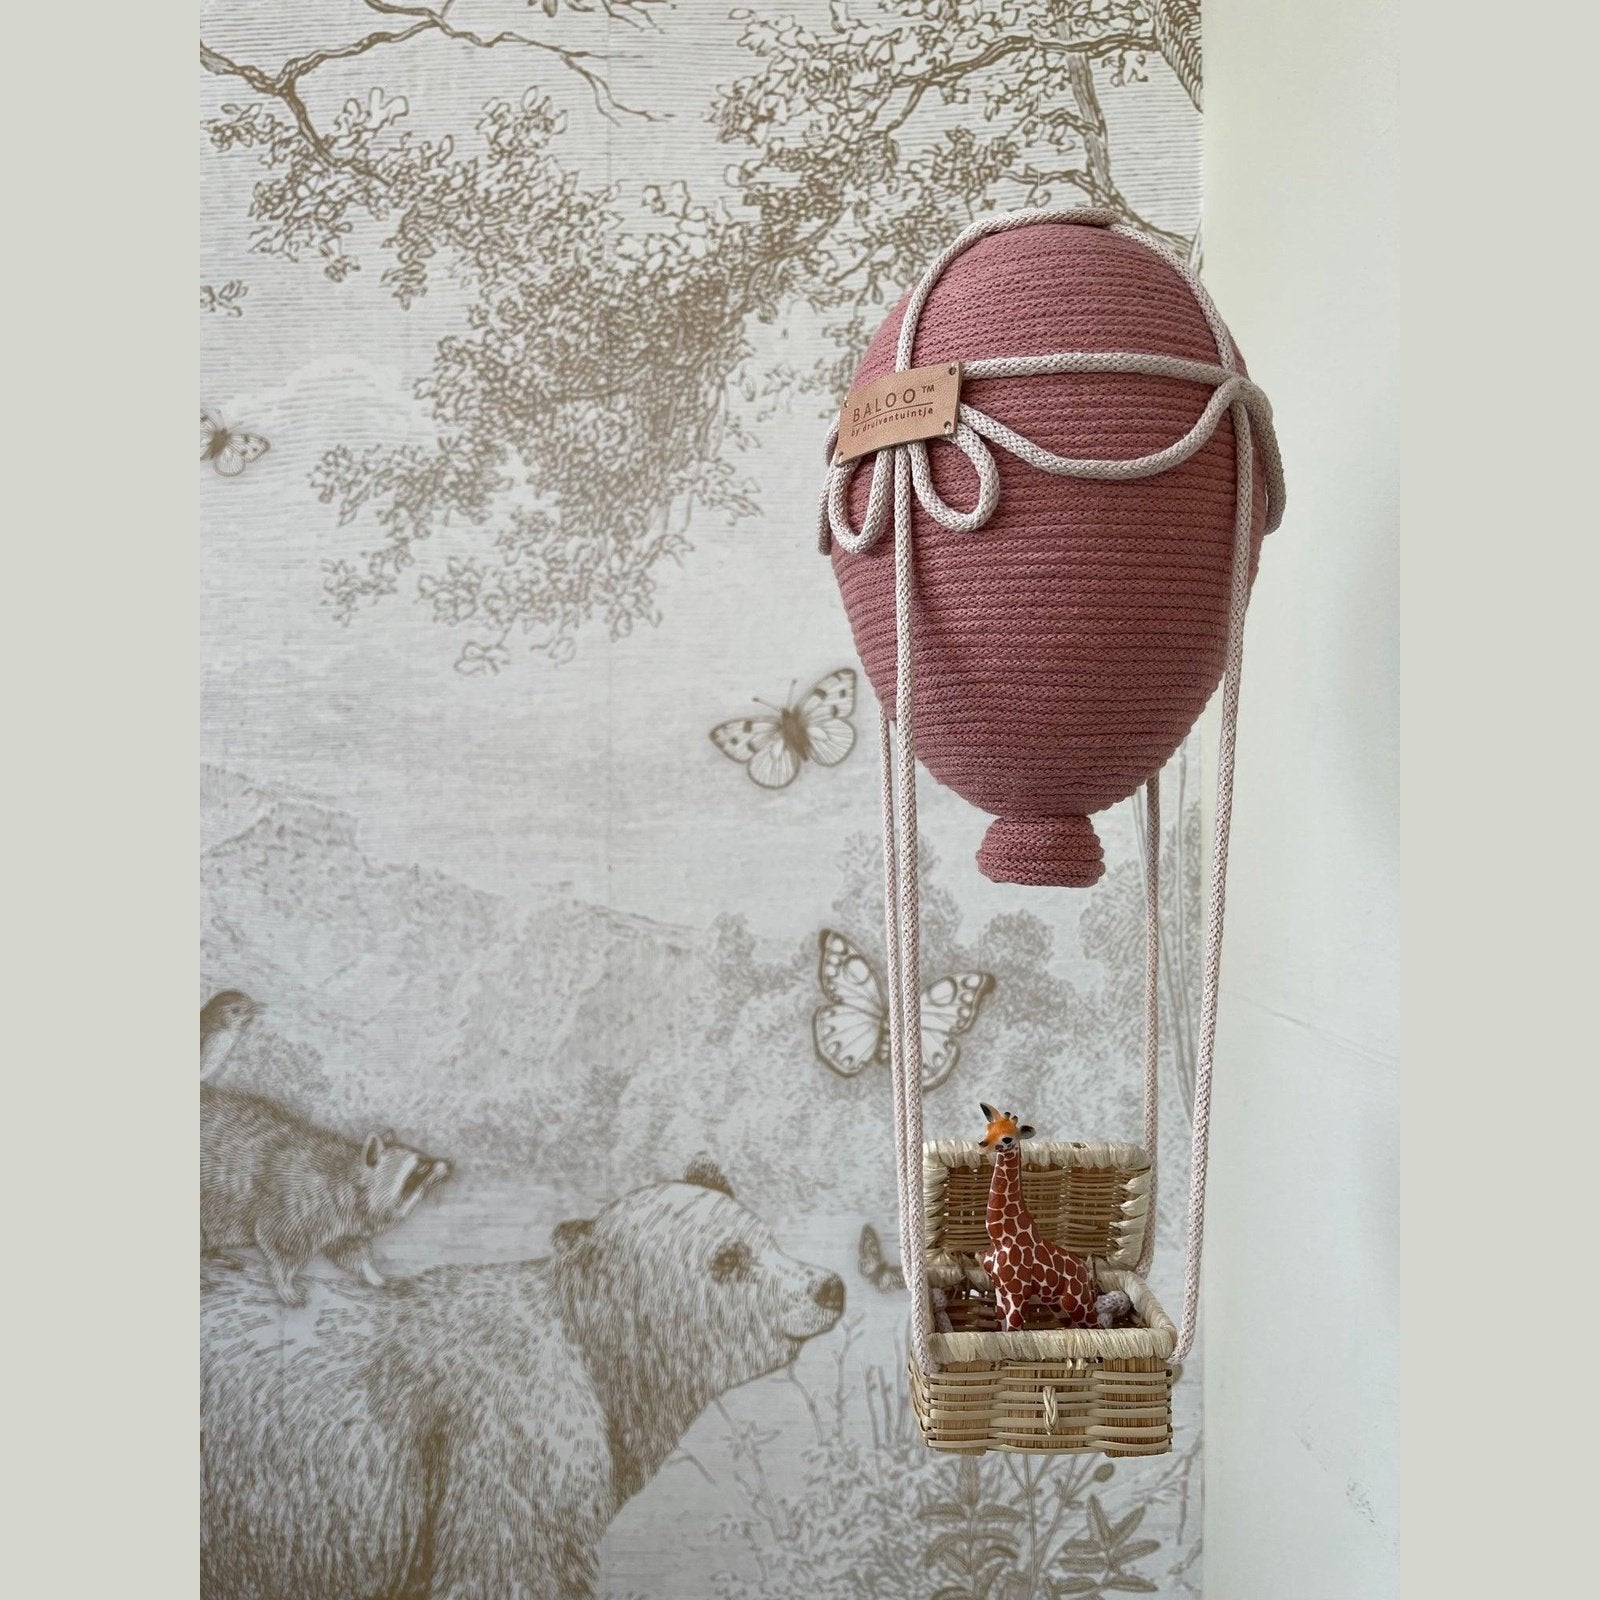 Balloon Flight (20 cm balloon with basket)  with giraffe Nursery Decor - TilianKids